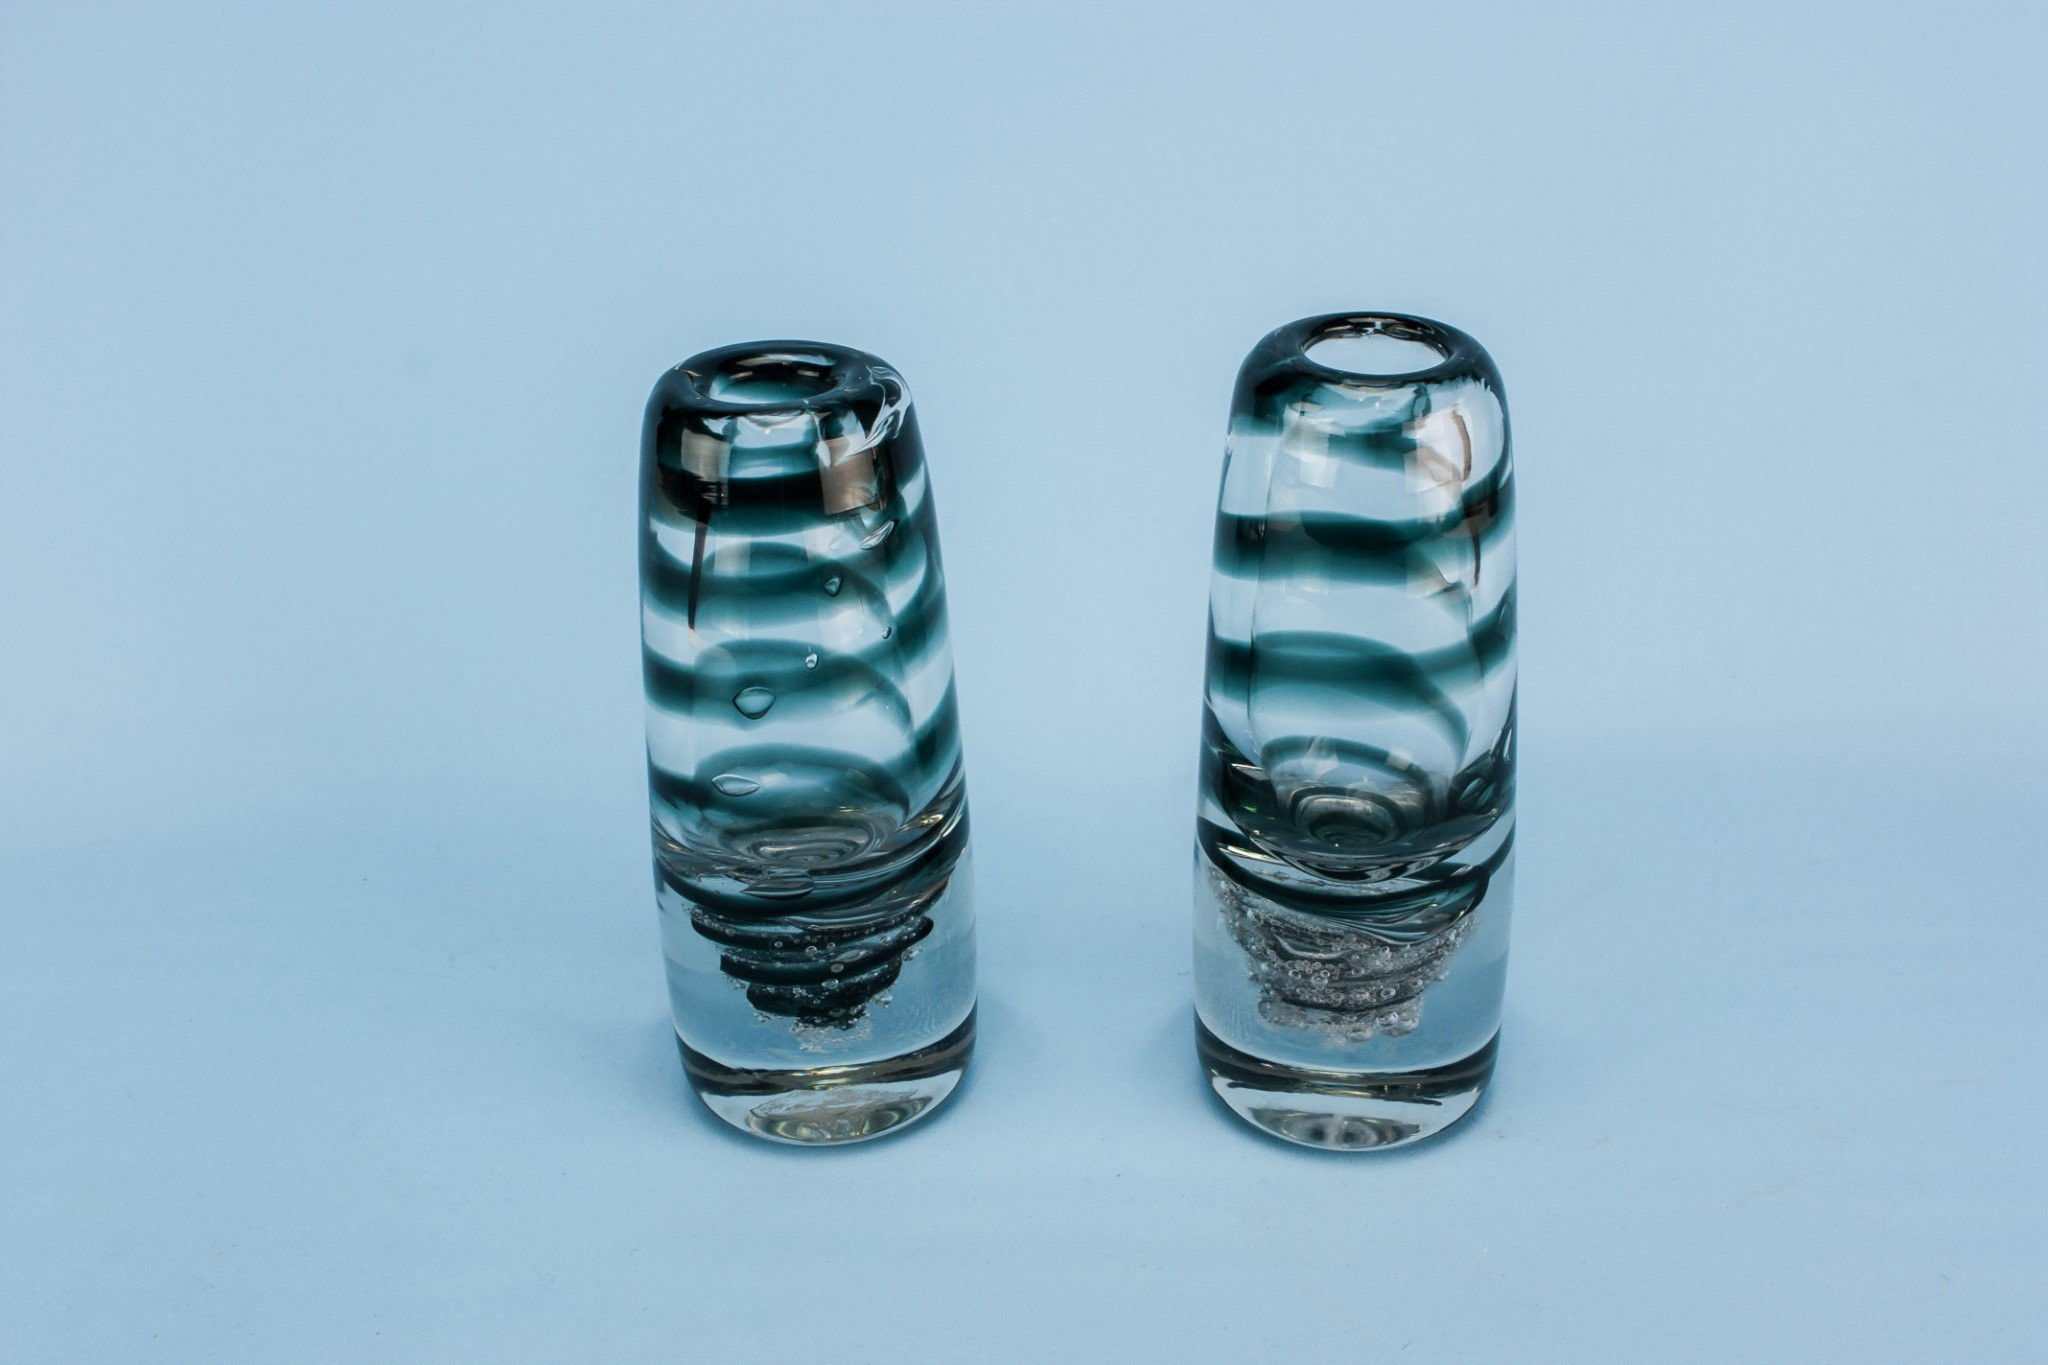 12 Nice Lead Crystal Vase Ebay 2024 free download lead crystal vase ebay of 17 fresh antique blue glass vases bogekompresorturkiye com with 2 glass vases